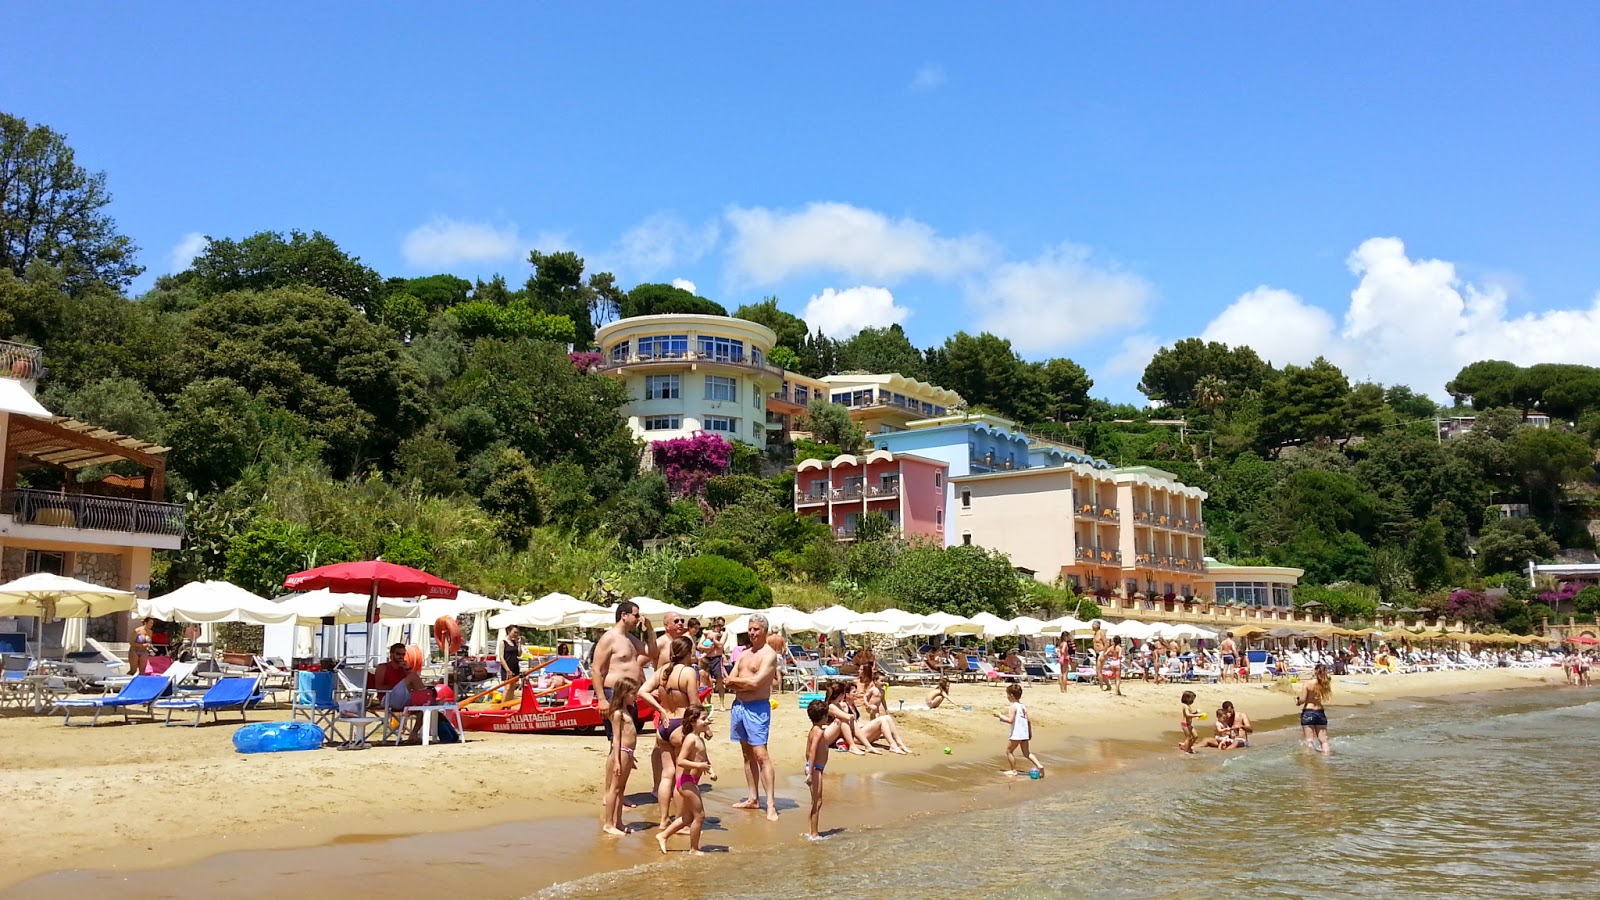 Foto av Summit Hotel beach - populär plats bland avkopplingskännare